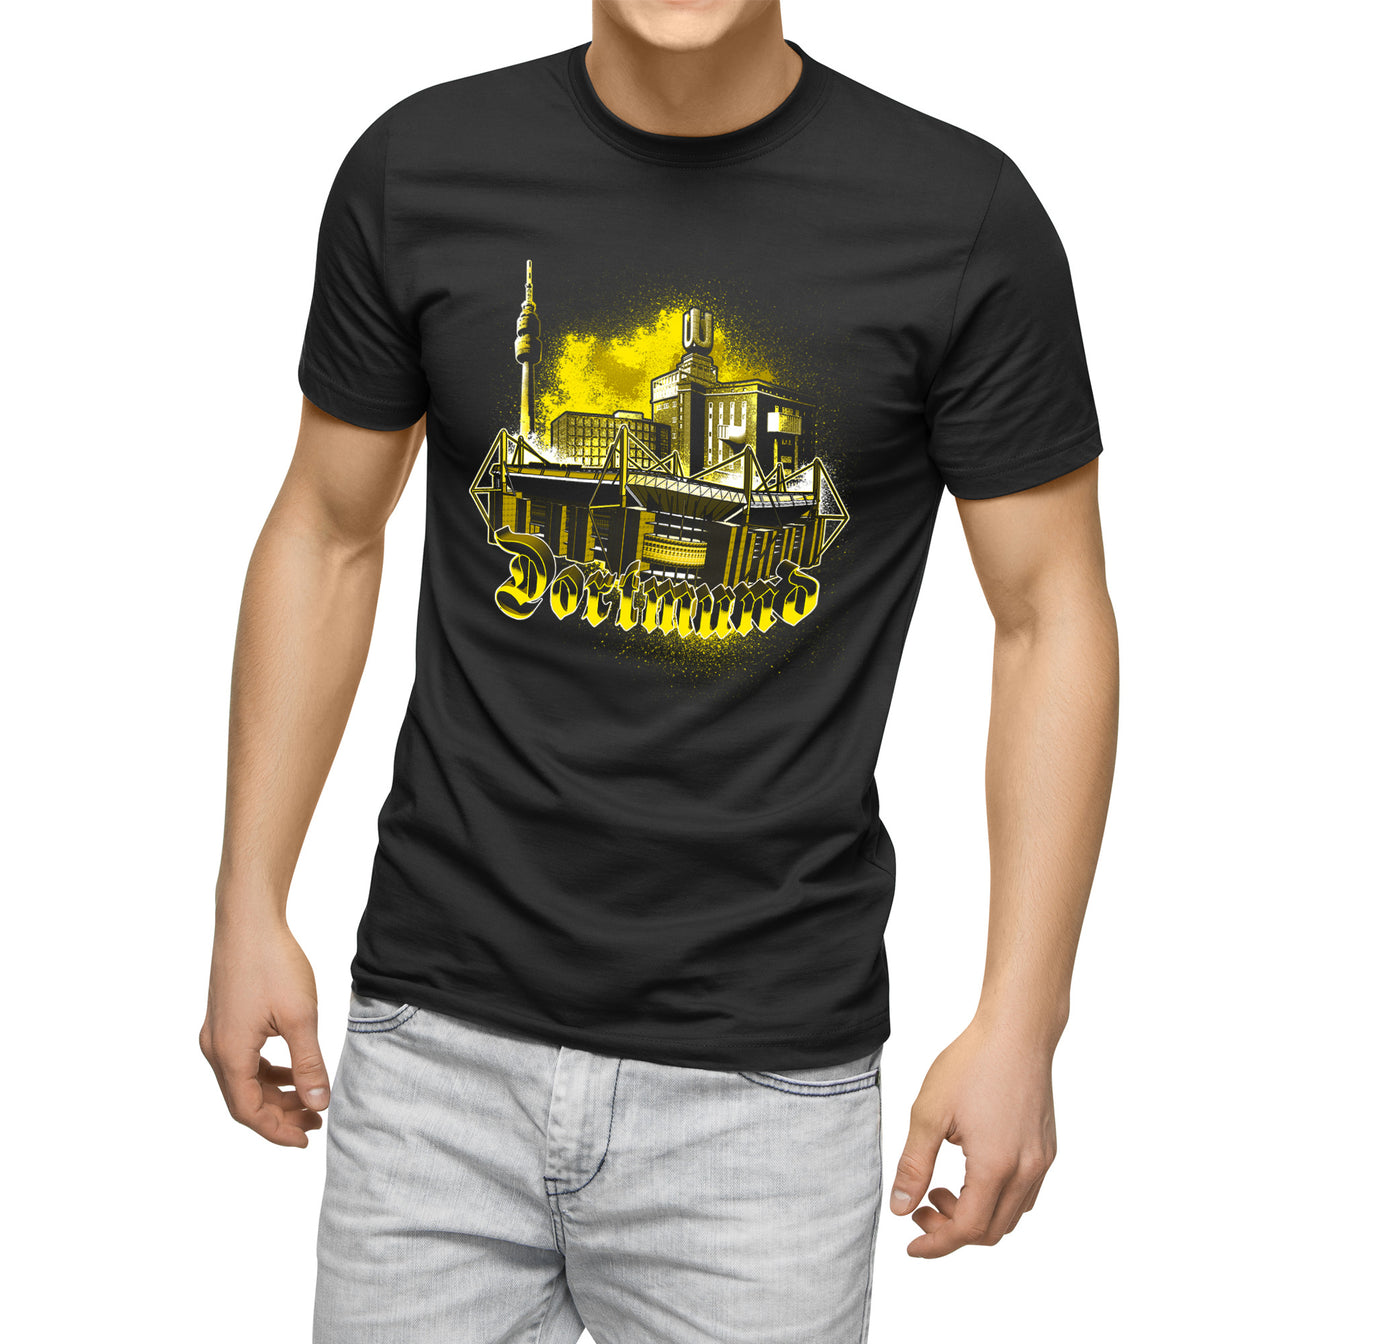 Dortmund Shirt "City" - Ultras Art